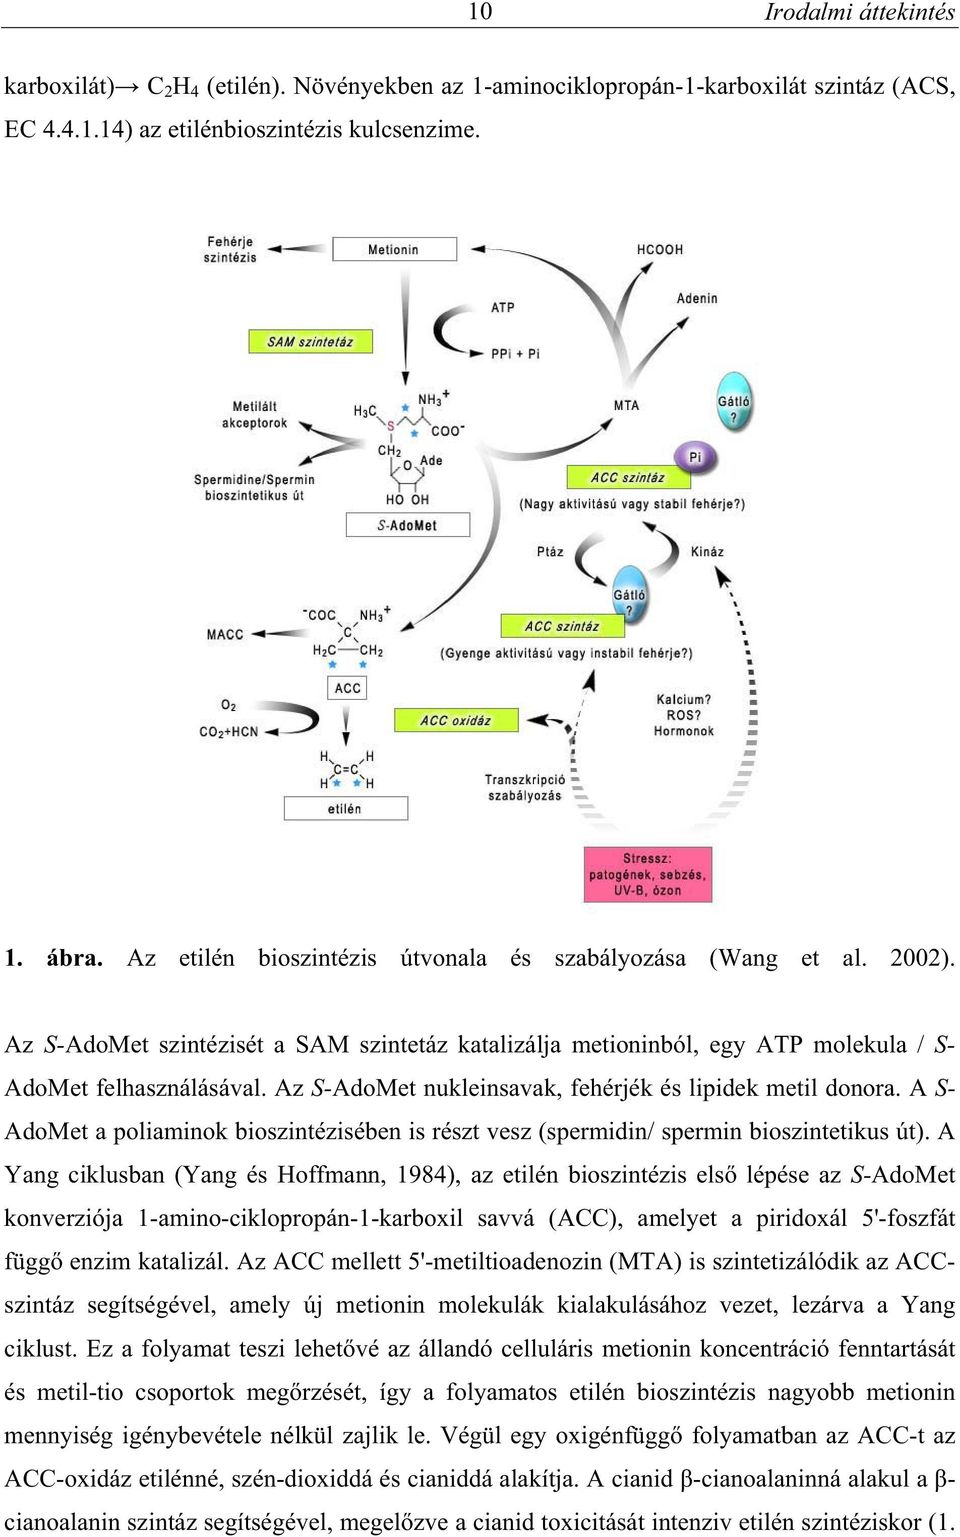 Az S-AdoMet nukleinsavak, fehérjék és lipidek metil donora. A S- AdoMet a poliaminok bioszintézisében is részt vesz (spermidin/ spermin bioszintetikus út).